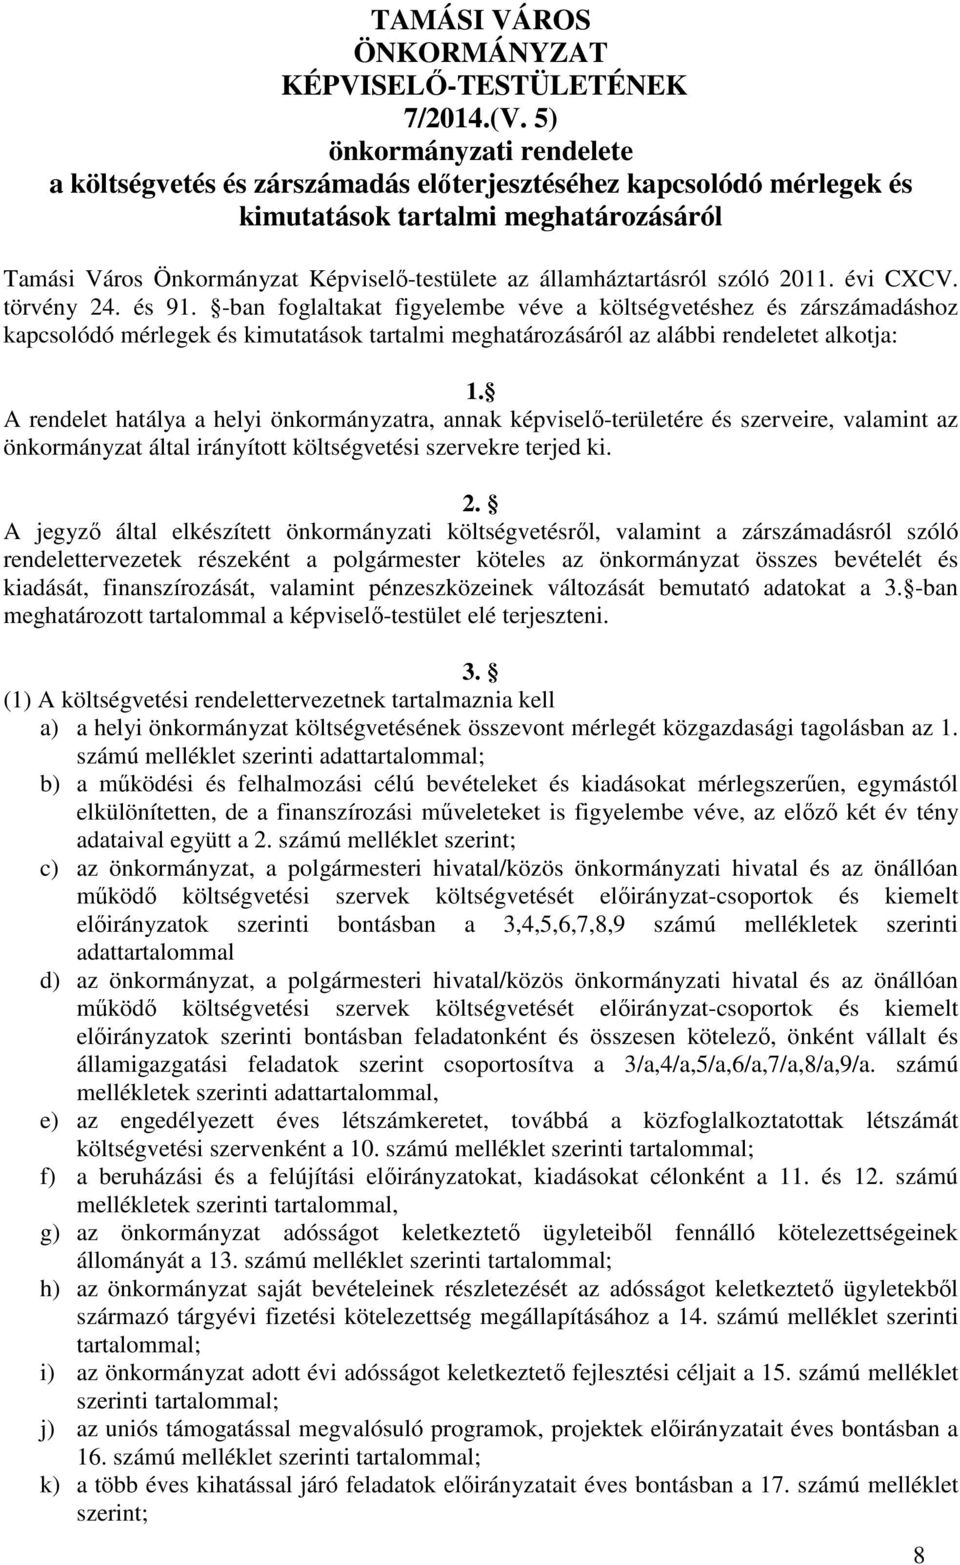 államháztartásról szóló 2011. évi CXCV. törvény 24. és 91.